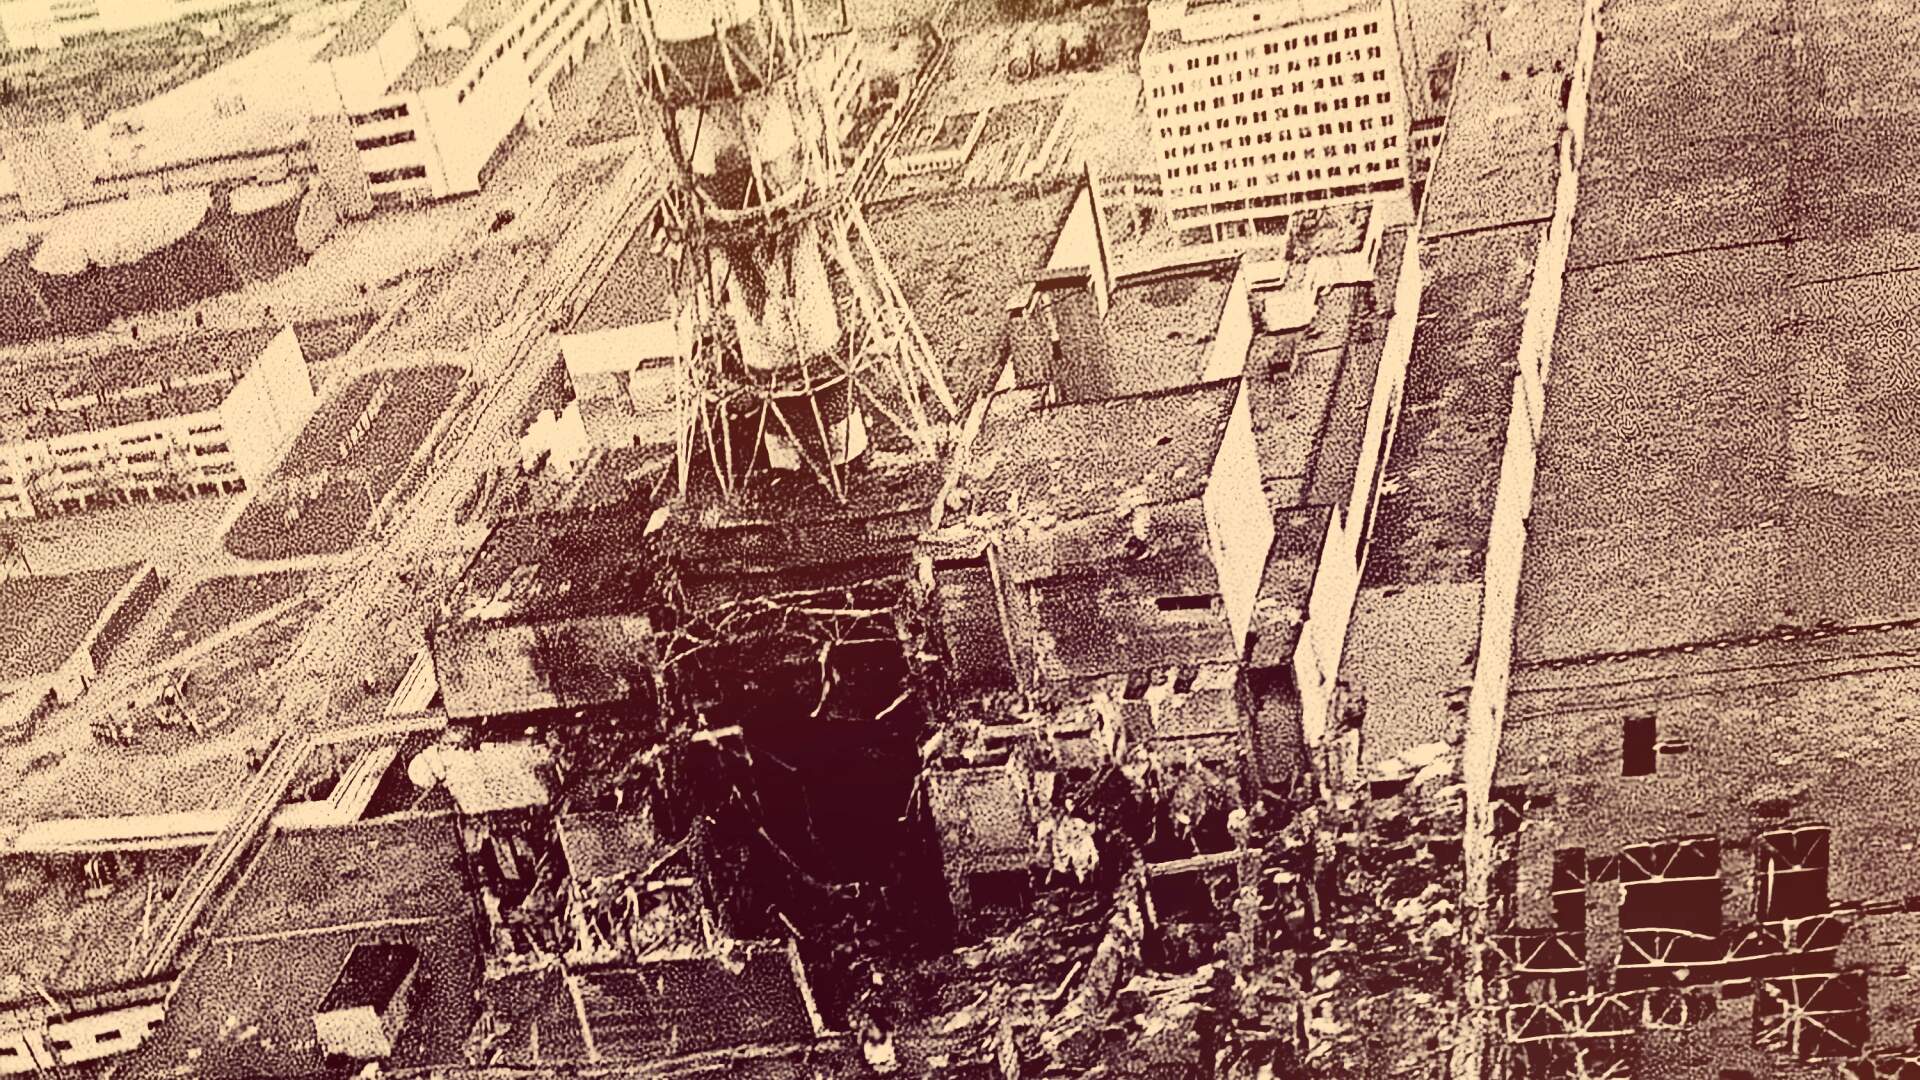 Чернобыль апрель 1986. 4 Энергоблок ЧАЭС 1986. Авария на ЧАЭС 1986. Чернобыльская АЭС 1986 реактор. Взрыв 4 энергоблока ЧАЭС.